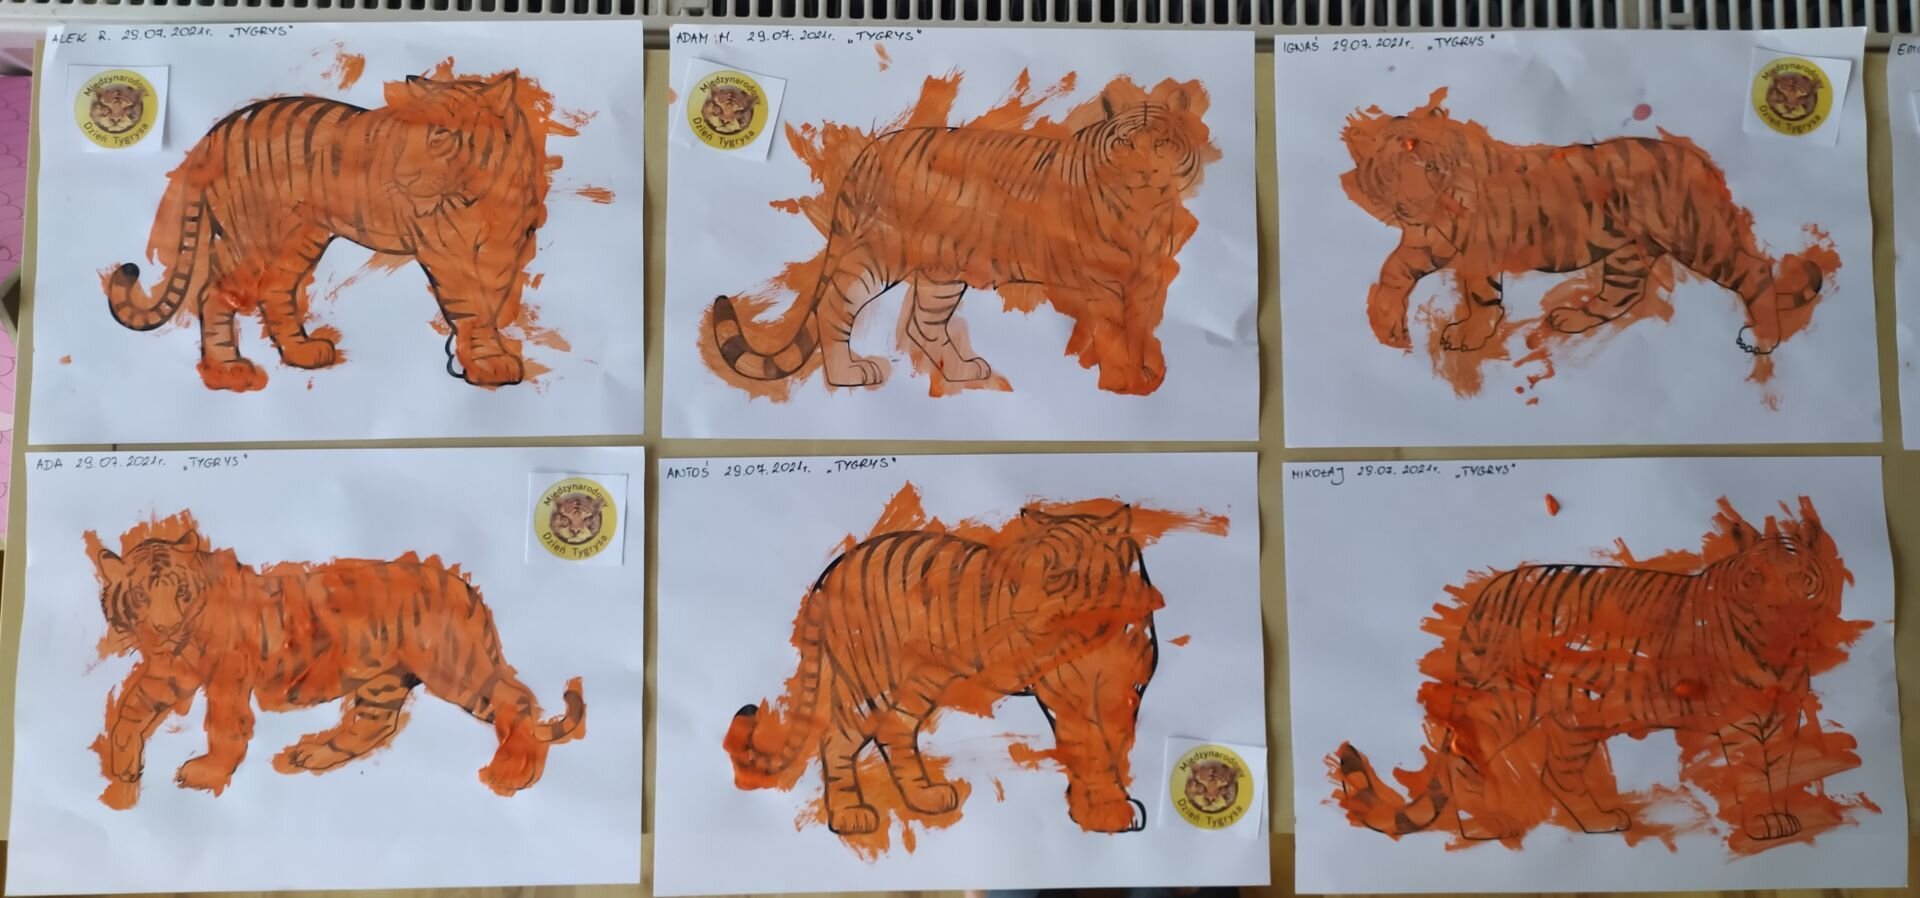 15 Tygrys - Światowy Dzień Tygrysa - Coś się skrada, coś szeleści, dżungla sto tajemnic mieści (1)